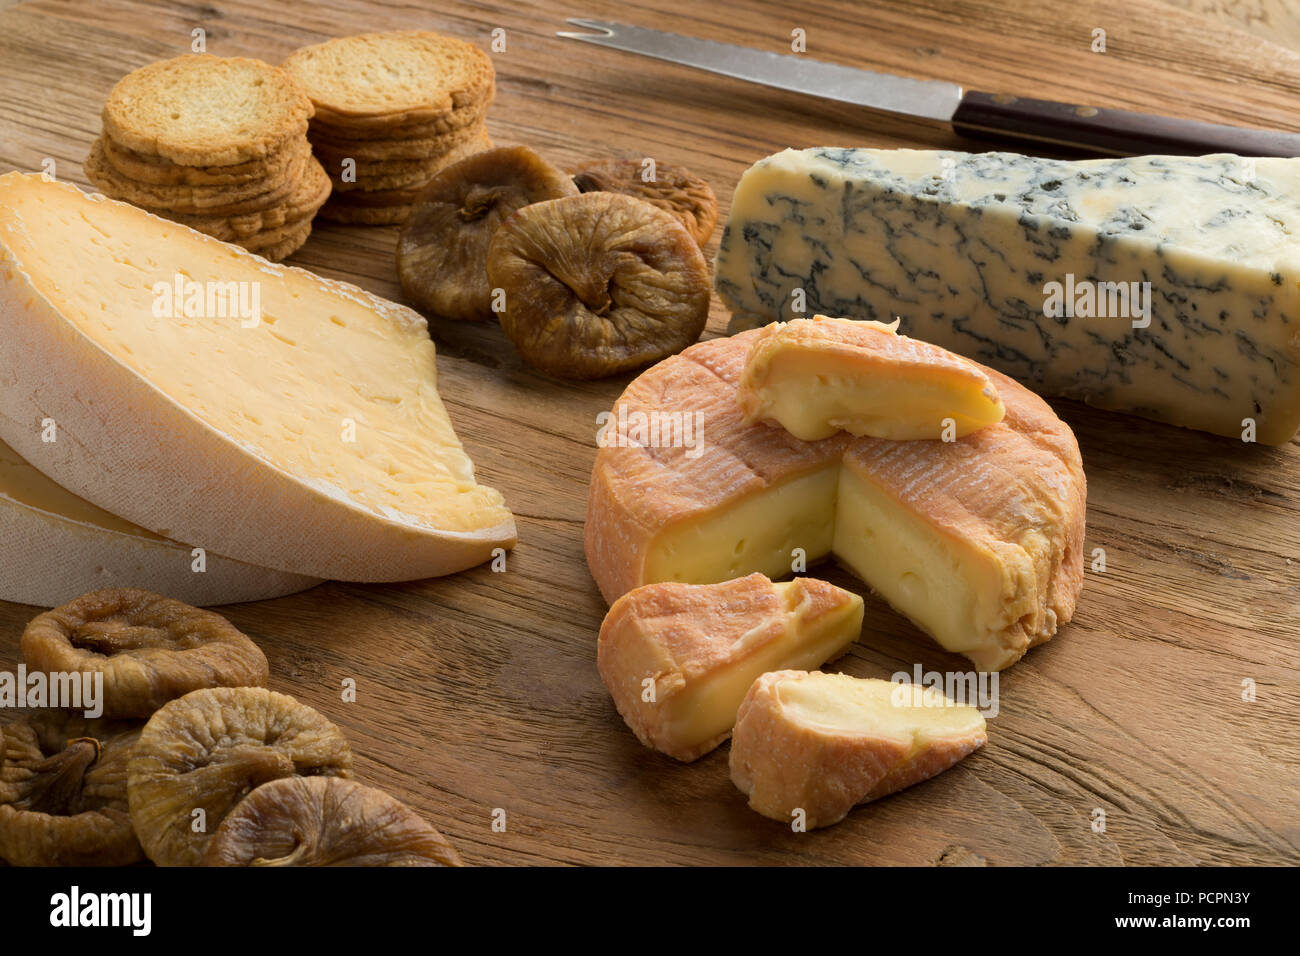 Tabla de quesos con una gran variedad de quesos, higos secos y tostadas y de postre Foto de stock